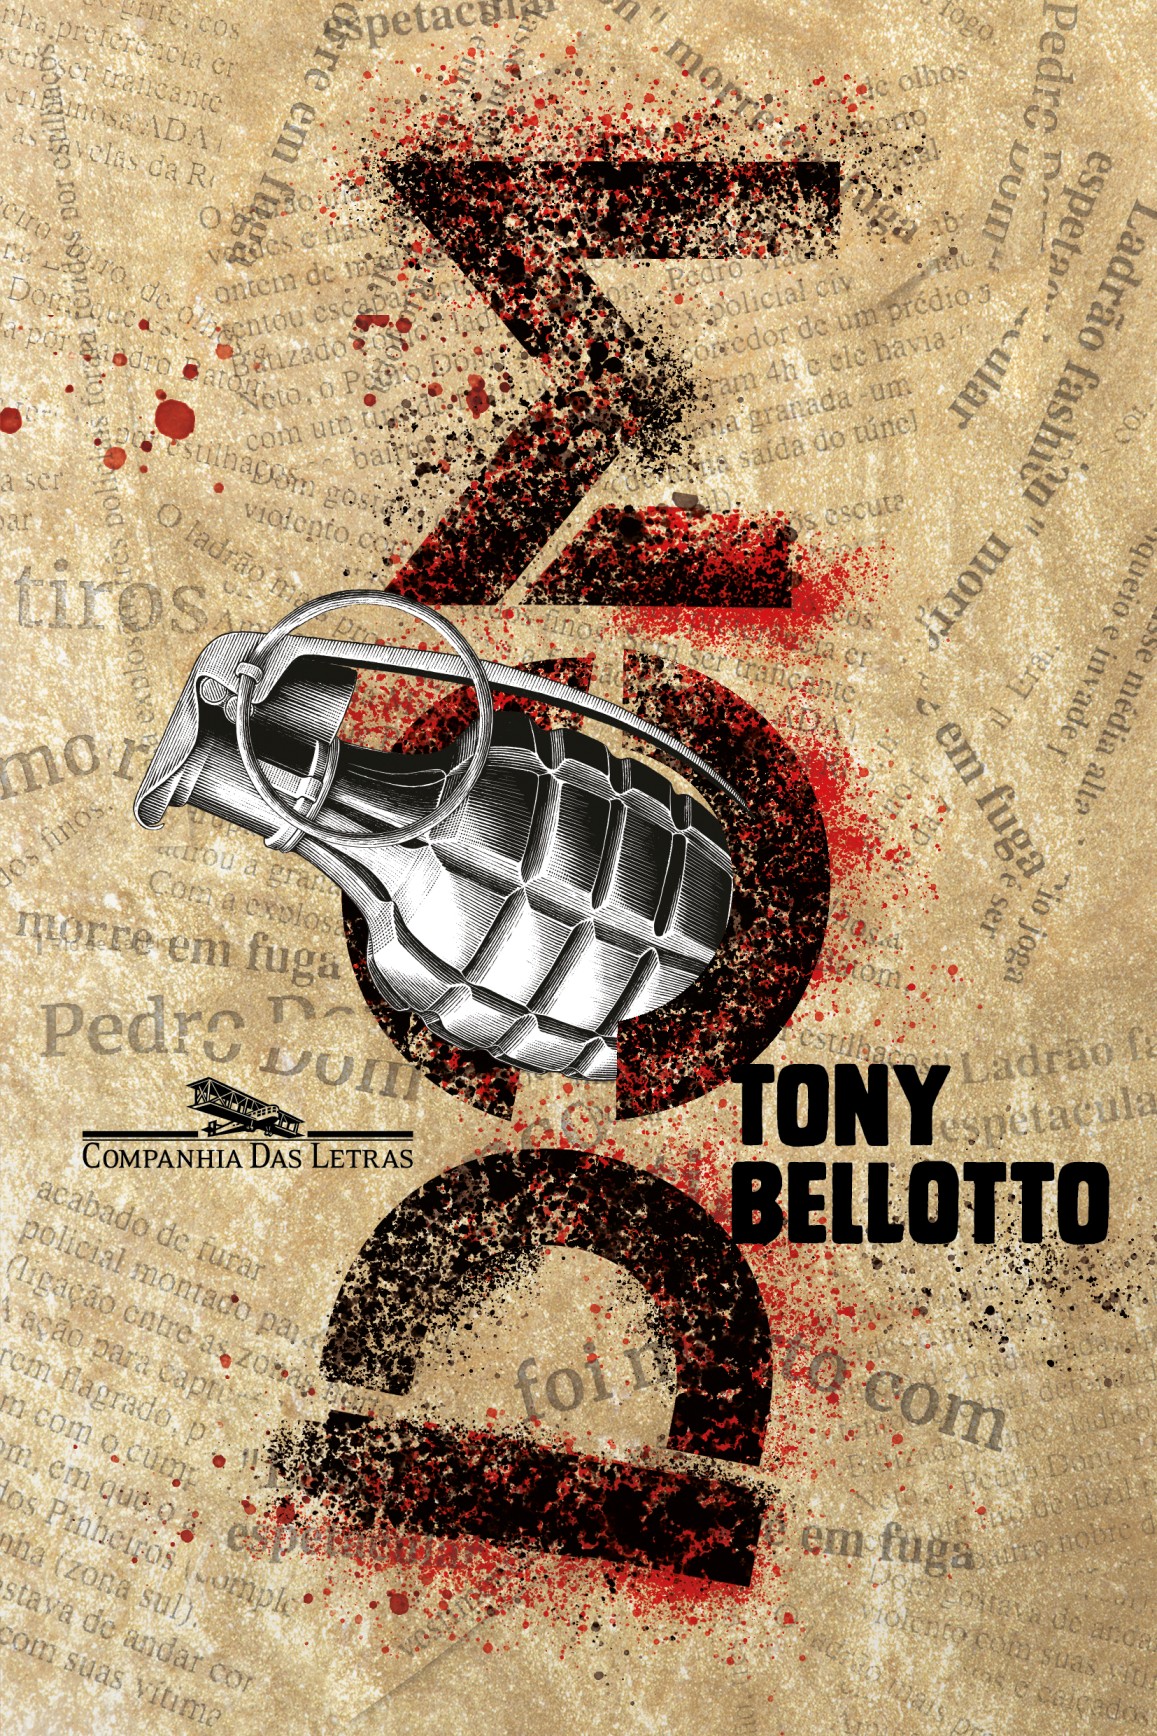 Lançamento de Tony Bellotto é indicação de leitura na quarentena